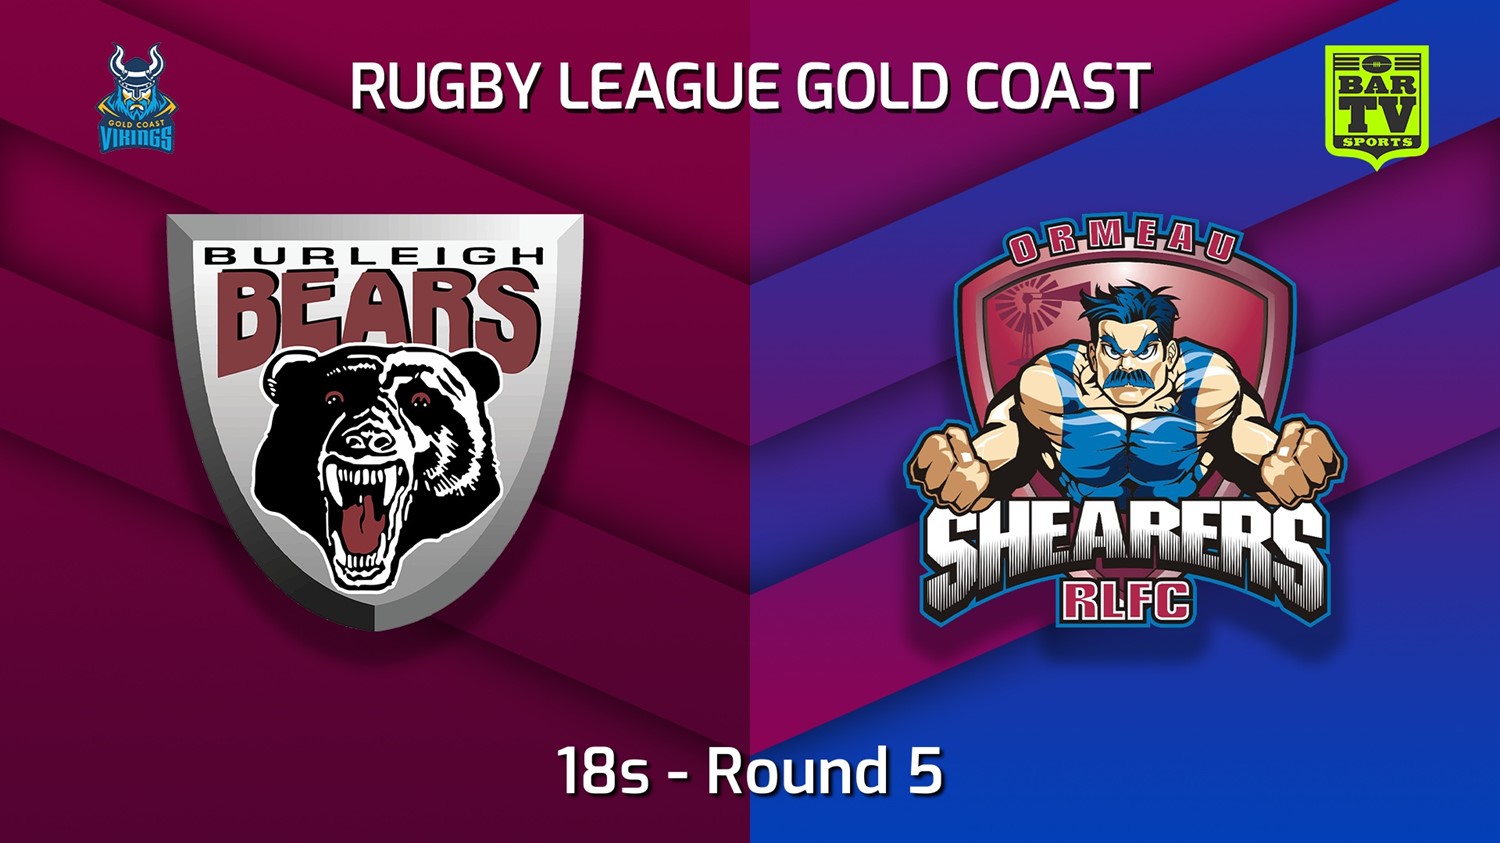 220508-Gold Coast Round 5 - 18s - Burleigh Bears v Ormeau Shearers Slate Image